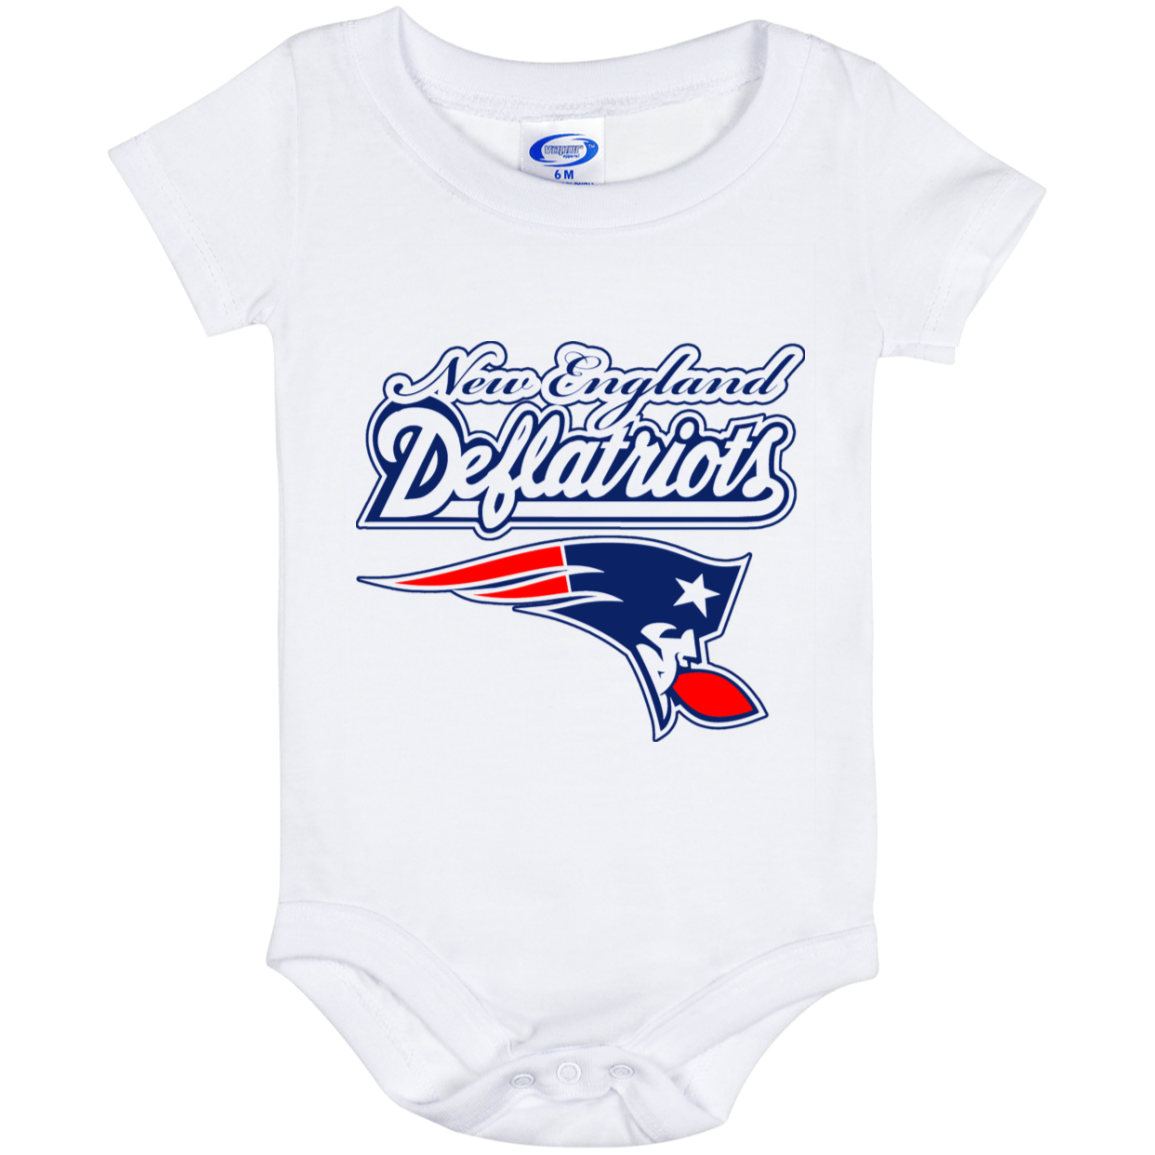 ArtichokeUSA Custom Design. New England Deflatriots. New England Patriots Parody. Baby Onesie 6 Month